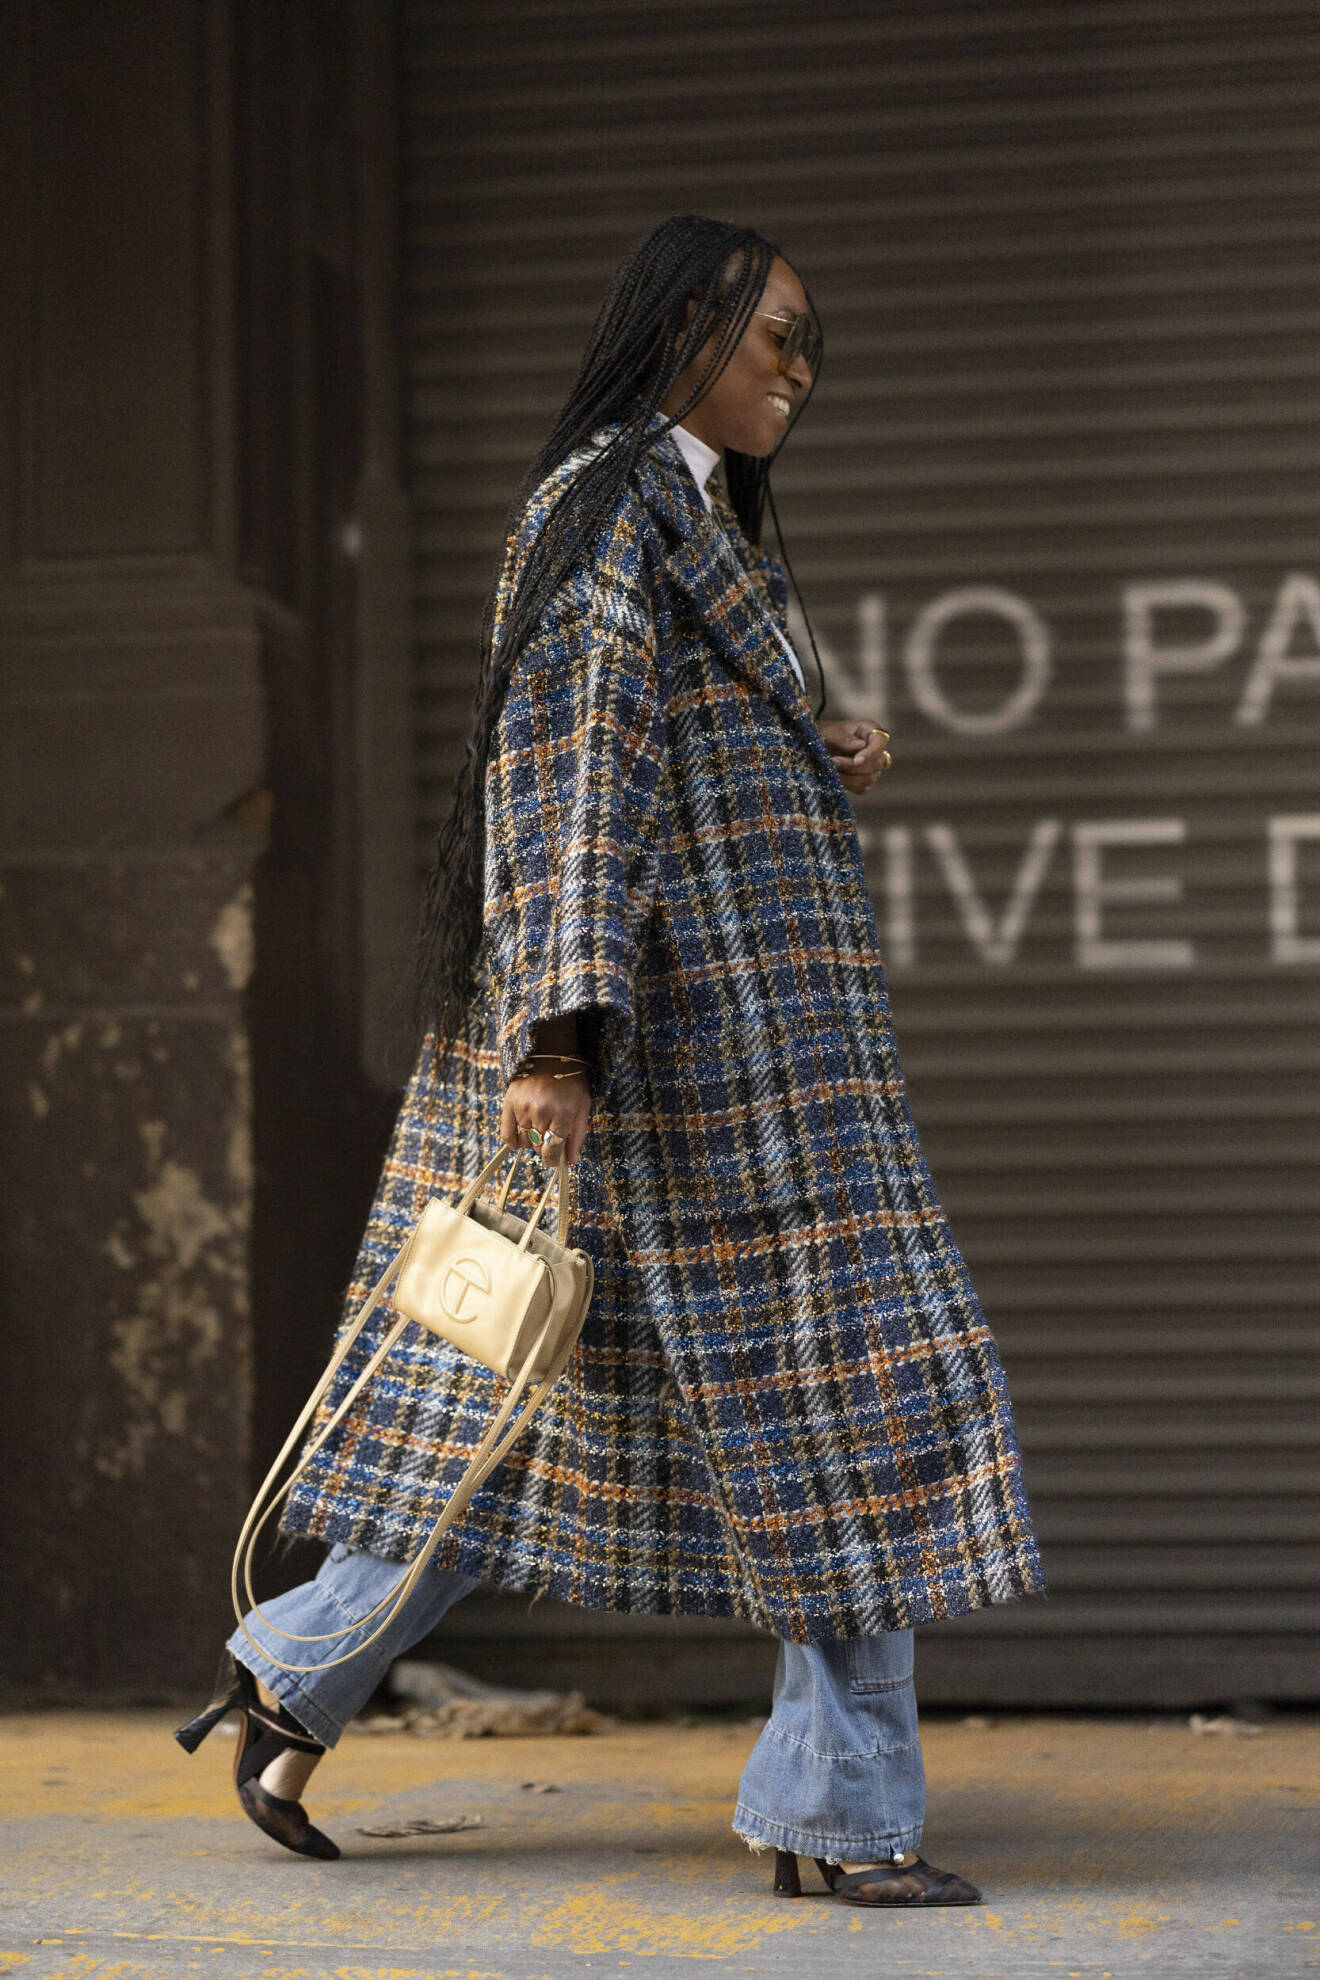 Streetstyle-look från NYFW med jeans och tweedliknande kappa.